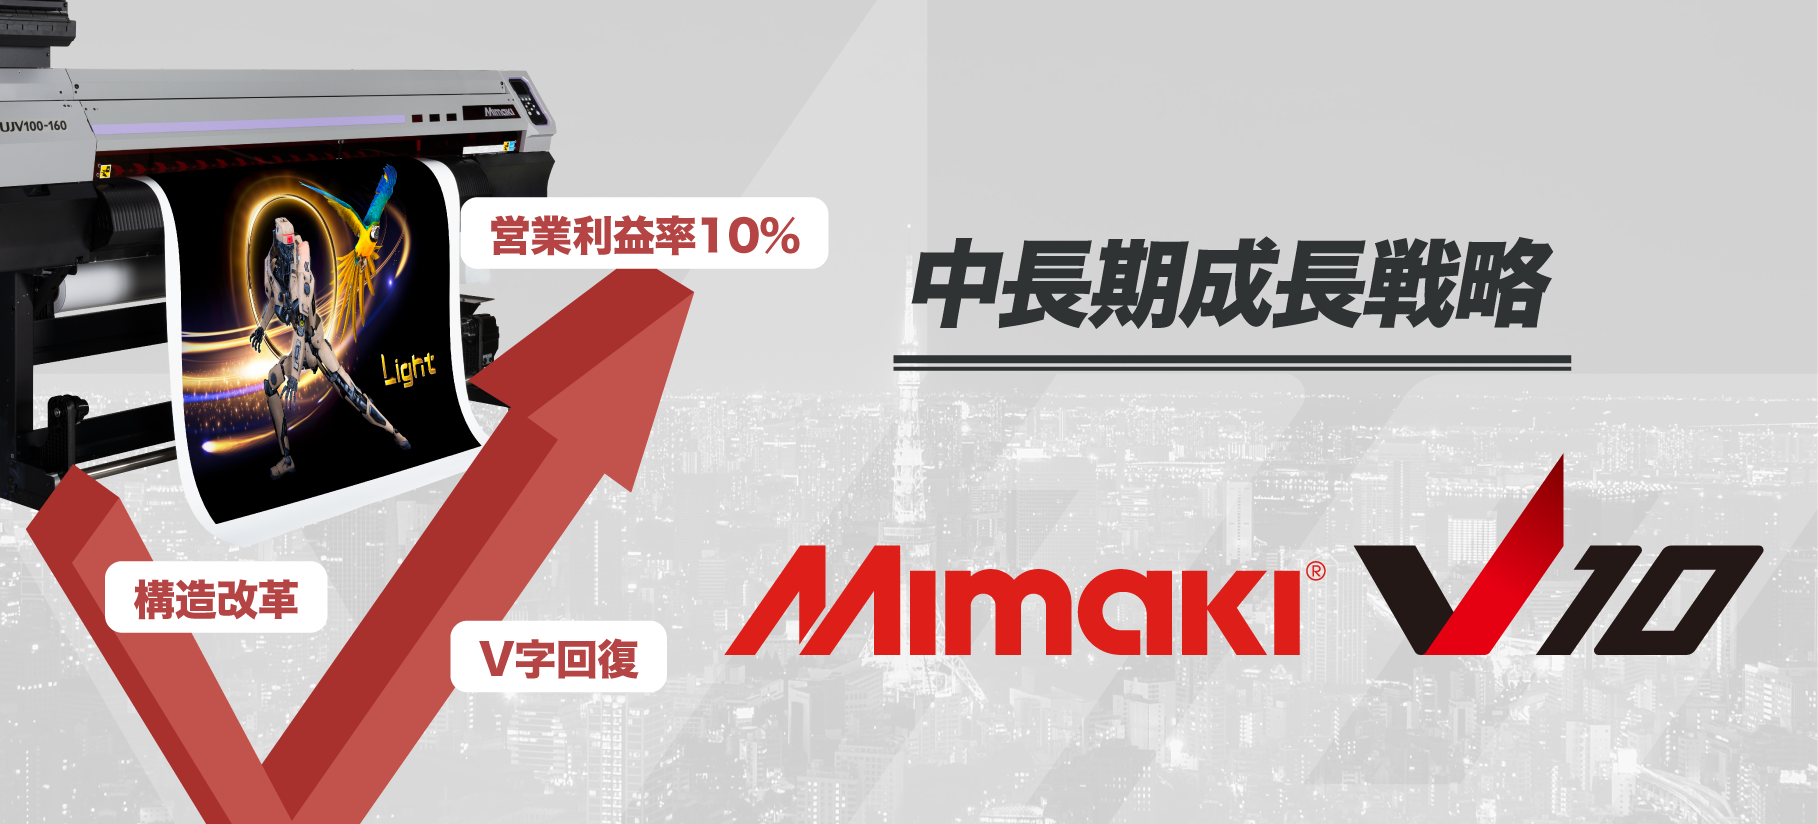 新中長期成長戦略 Mimaki V10